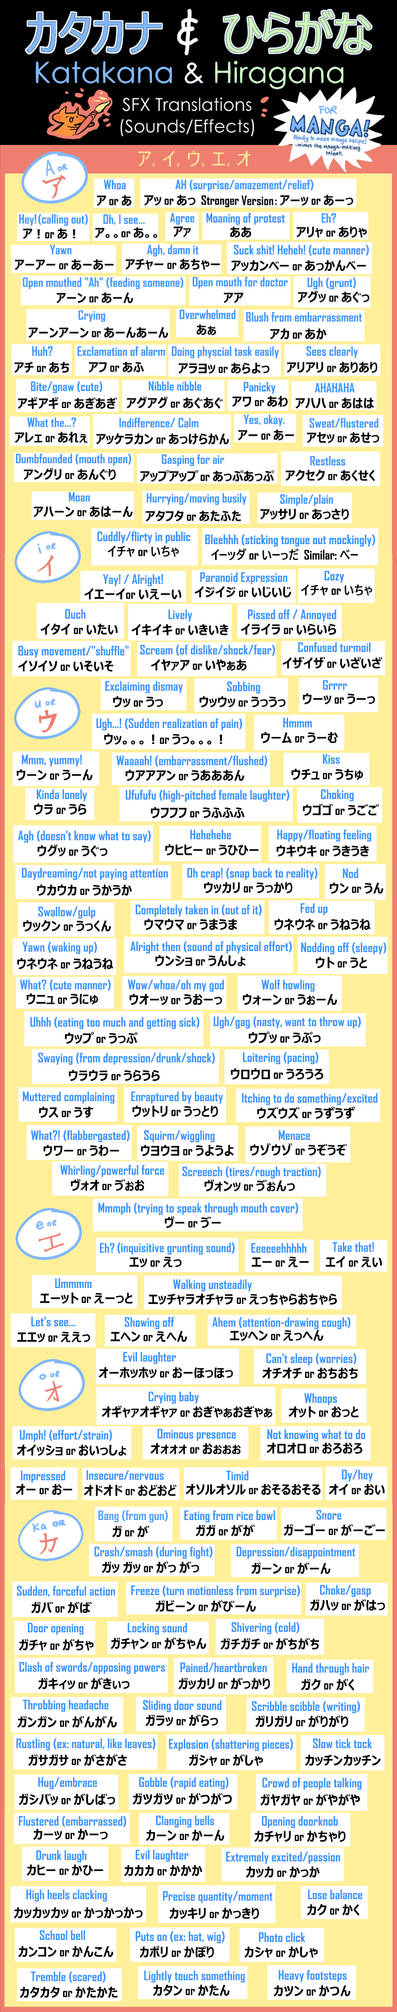 (Updated 7/11/16) Manga Katakana/Hiragana Chart